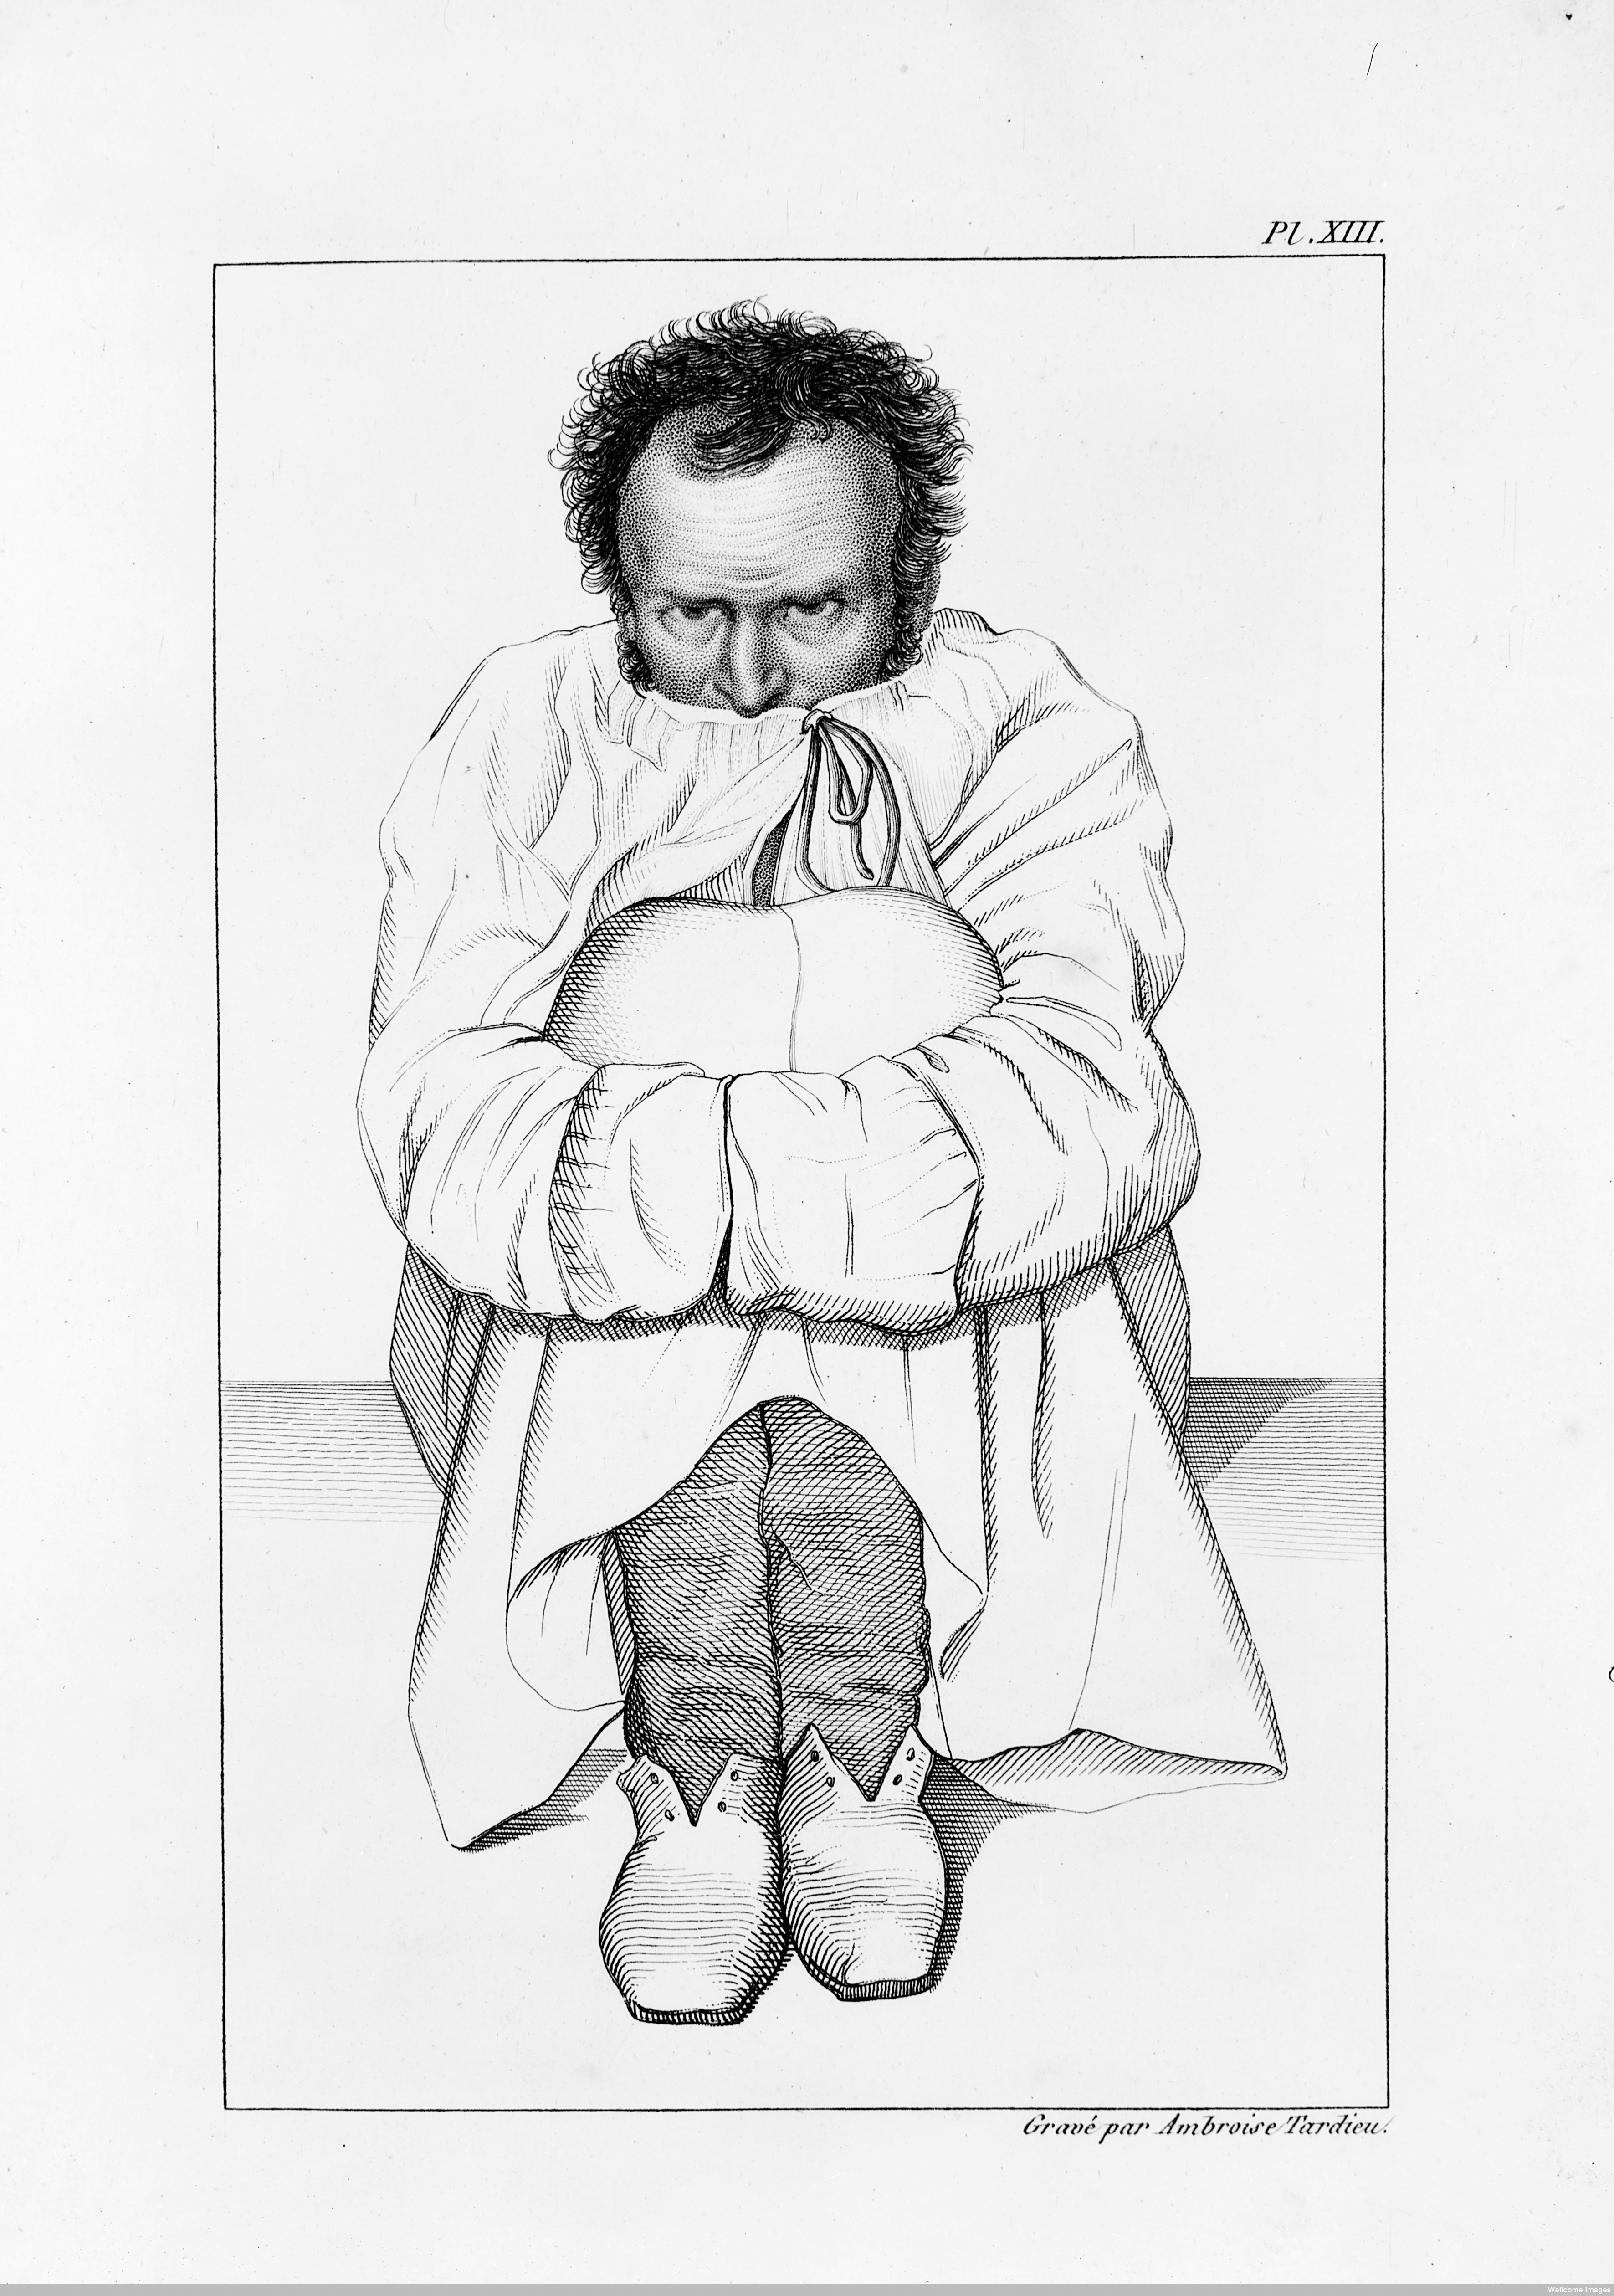 L0011307 Maniac in a strait-jacket, in a French asylum.